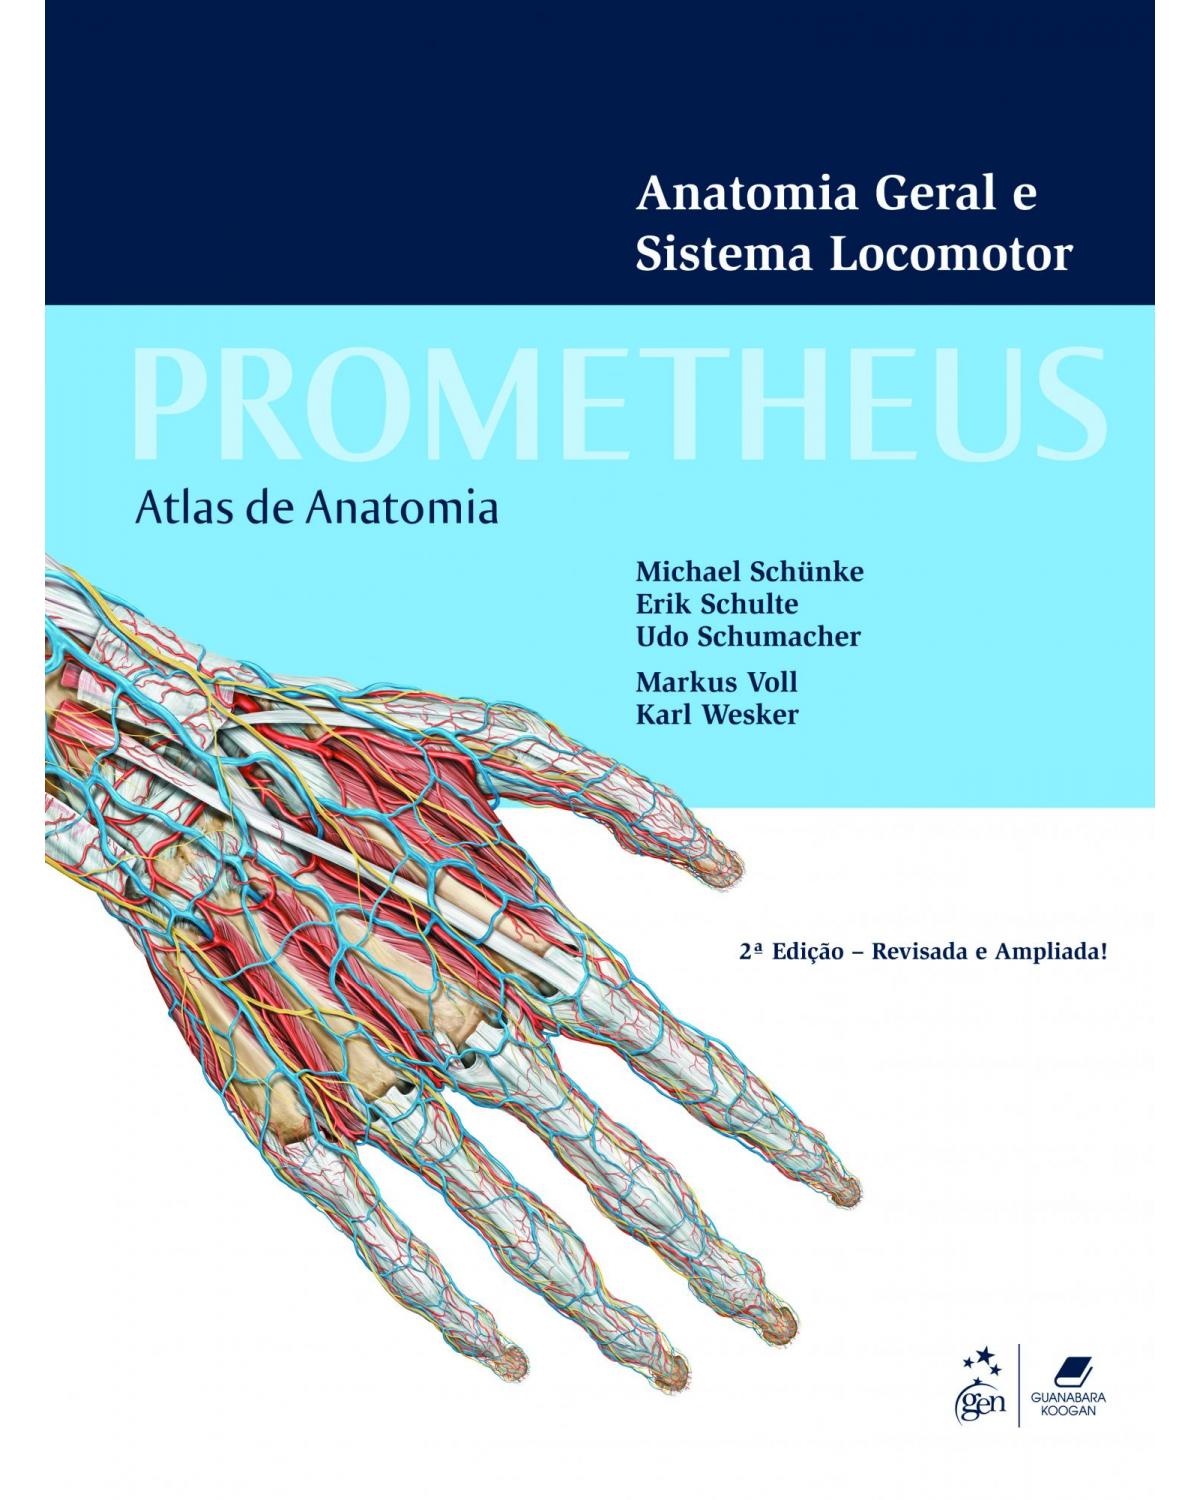 Atlas de anatomia - 2ª Edição | 2013